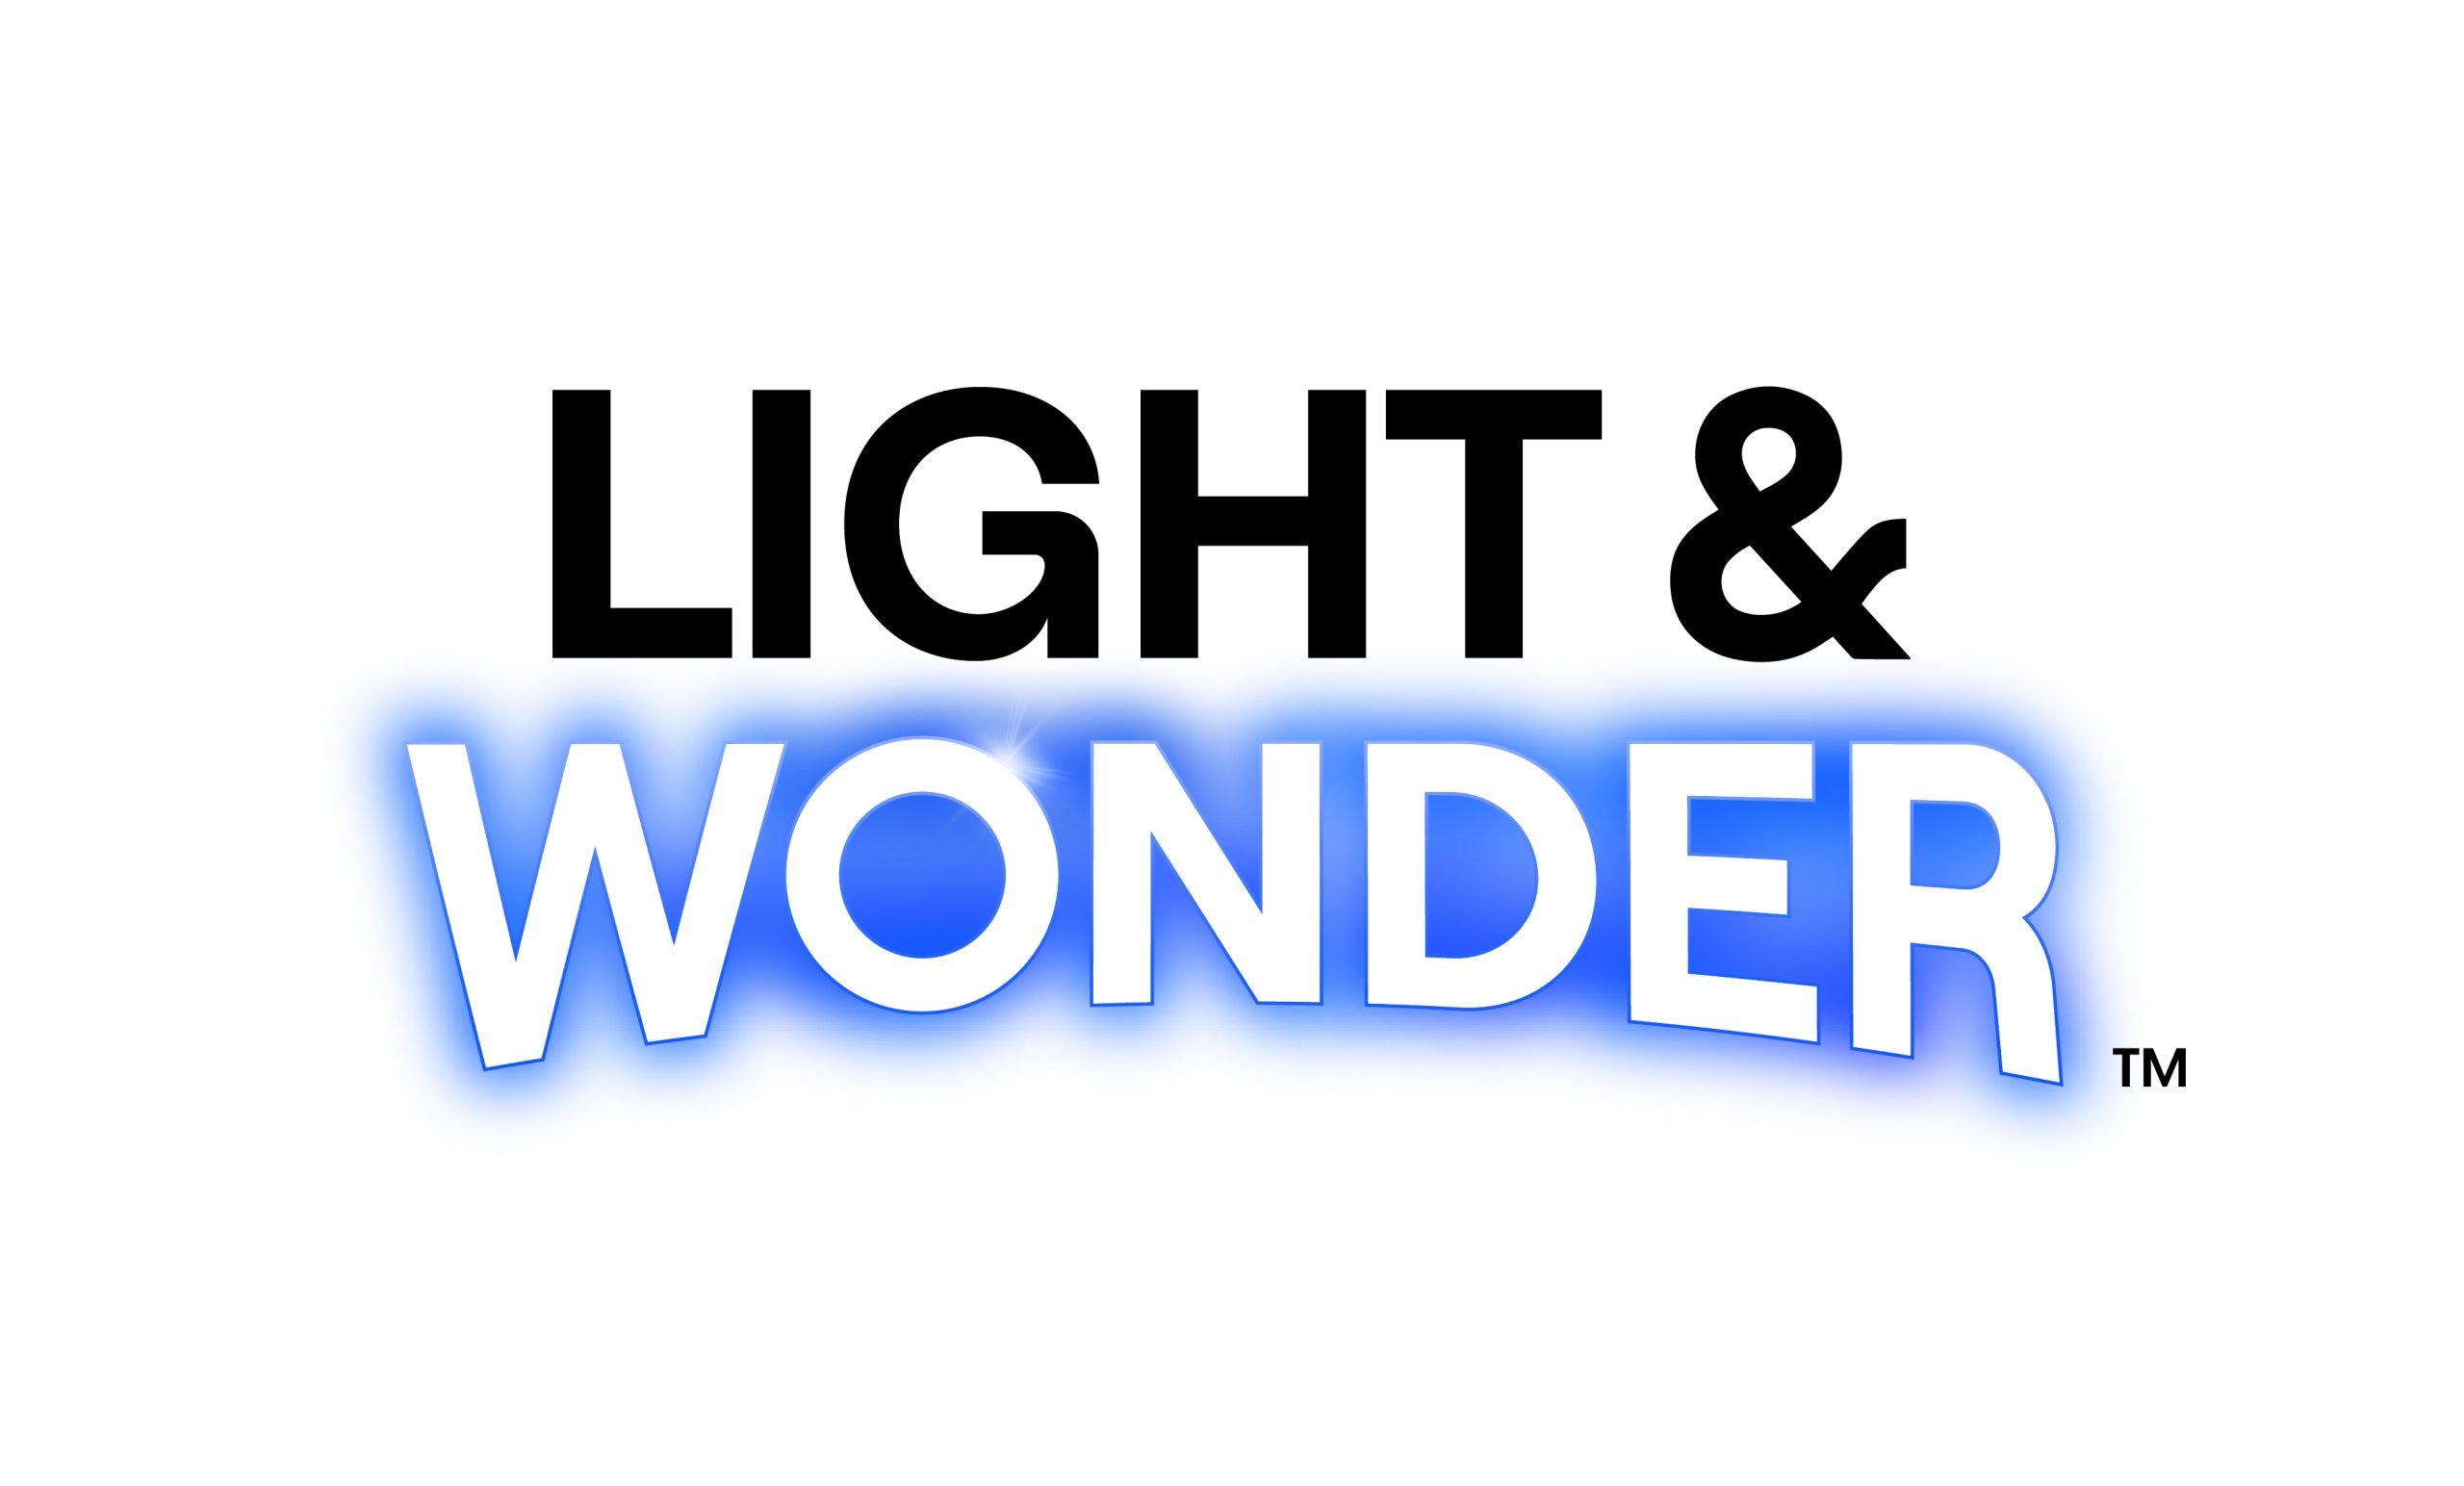 Light & Wonder stock